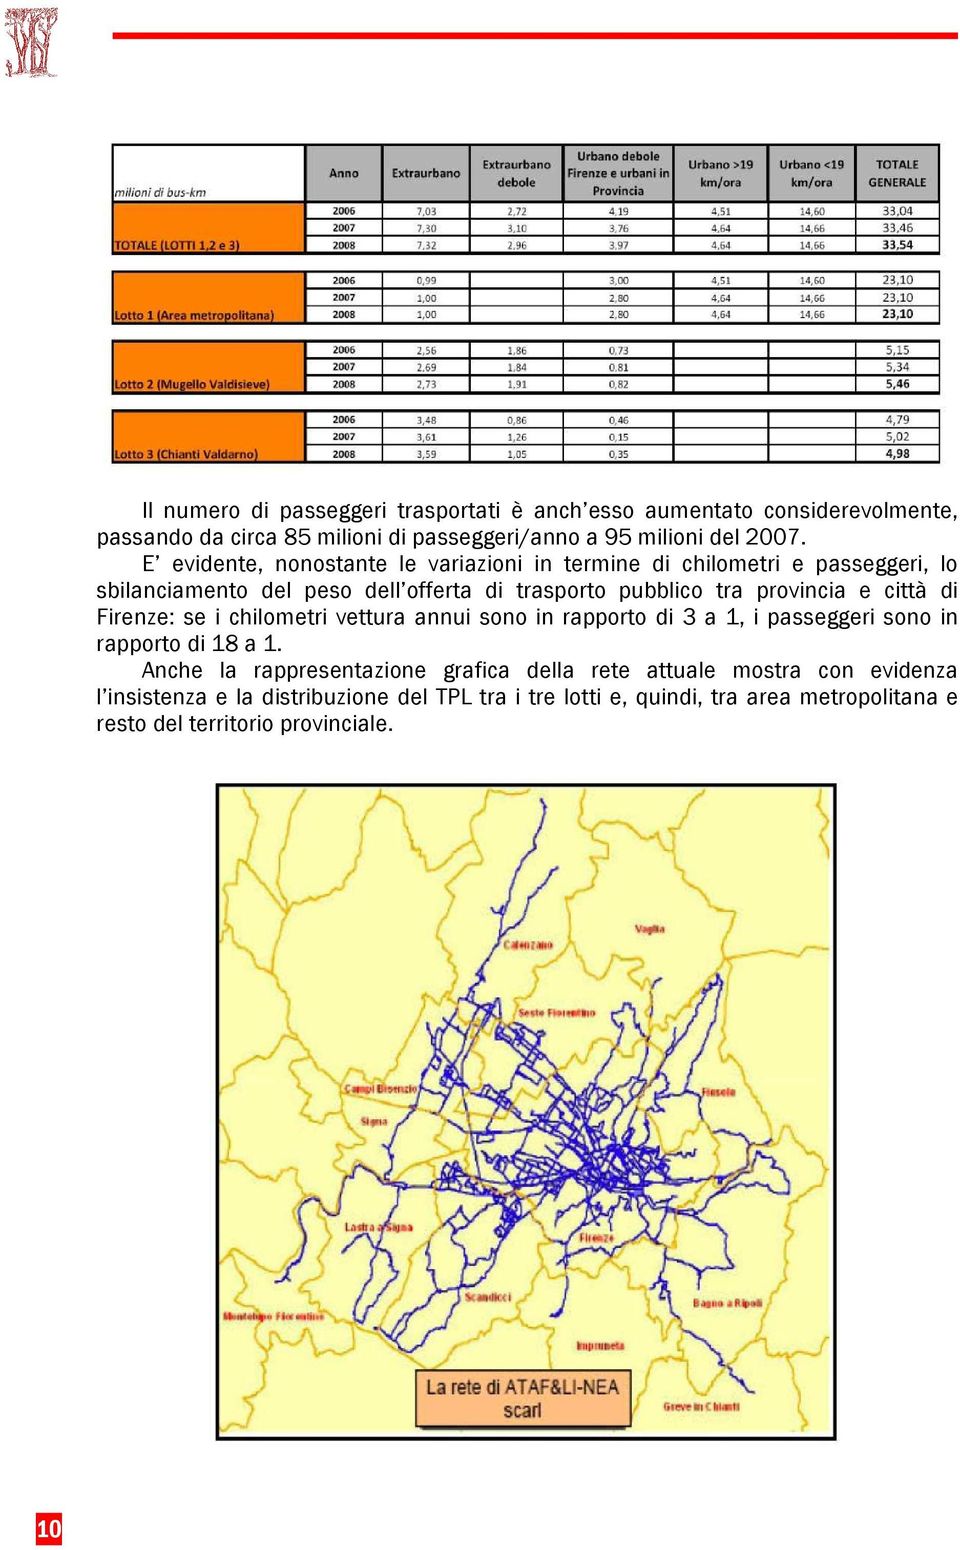 città di Firenze: se i chilometri vettura annui sono in rapporto di 3 a 1, i passeggeri sono in rapporto di 18 a 1.